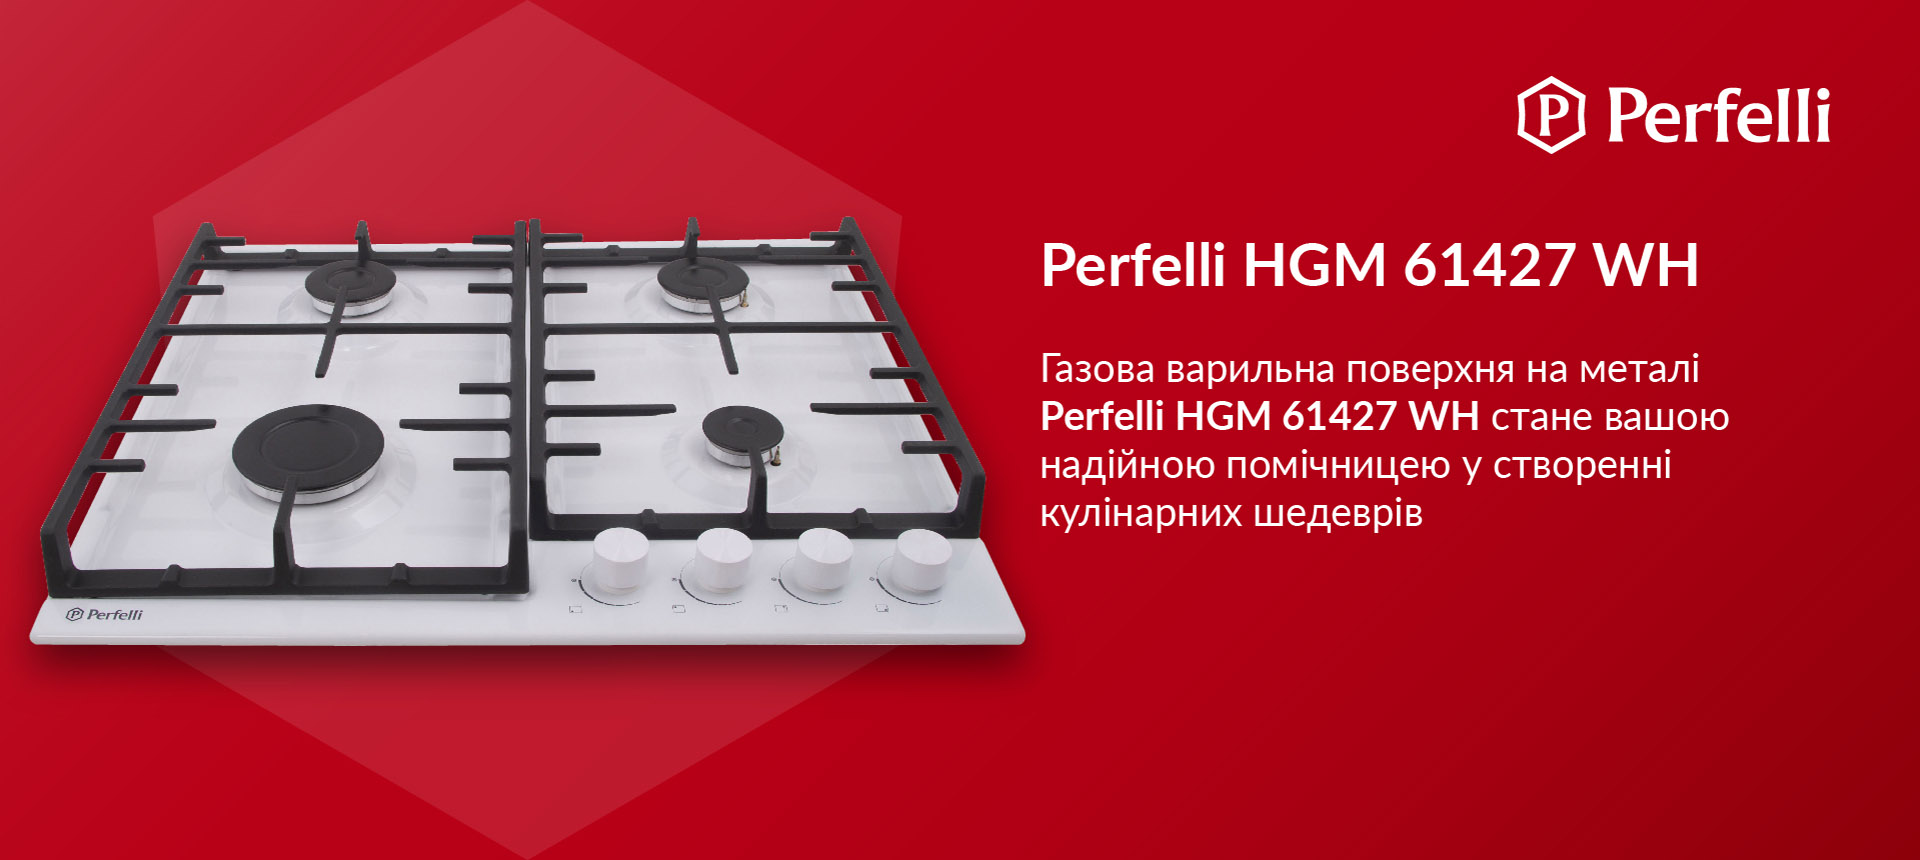 Газова варильна поверхня на металі Perfelli HGM 61427 WH стане вашою надійною помічницею у створенні кулінарних шедеврів